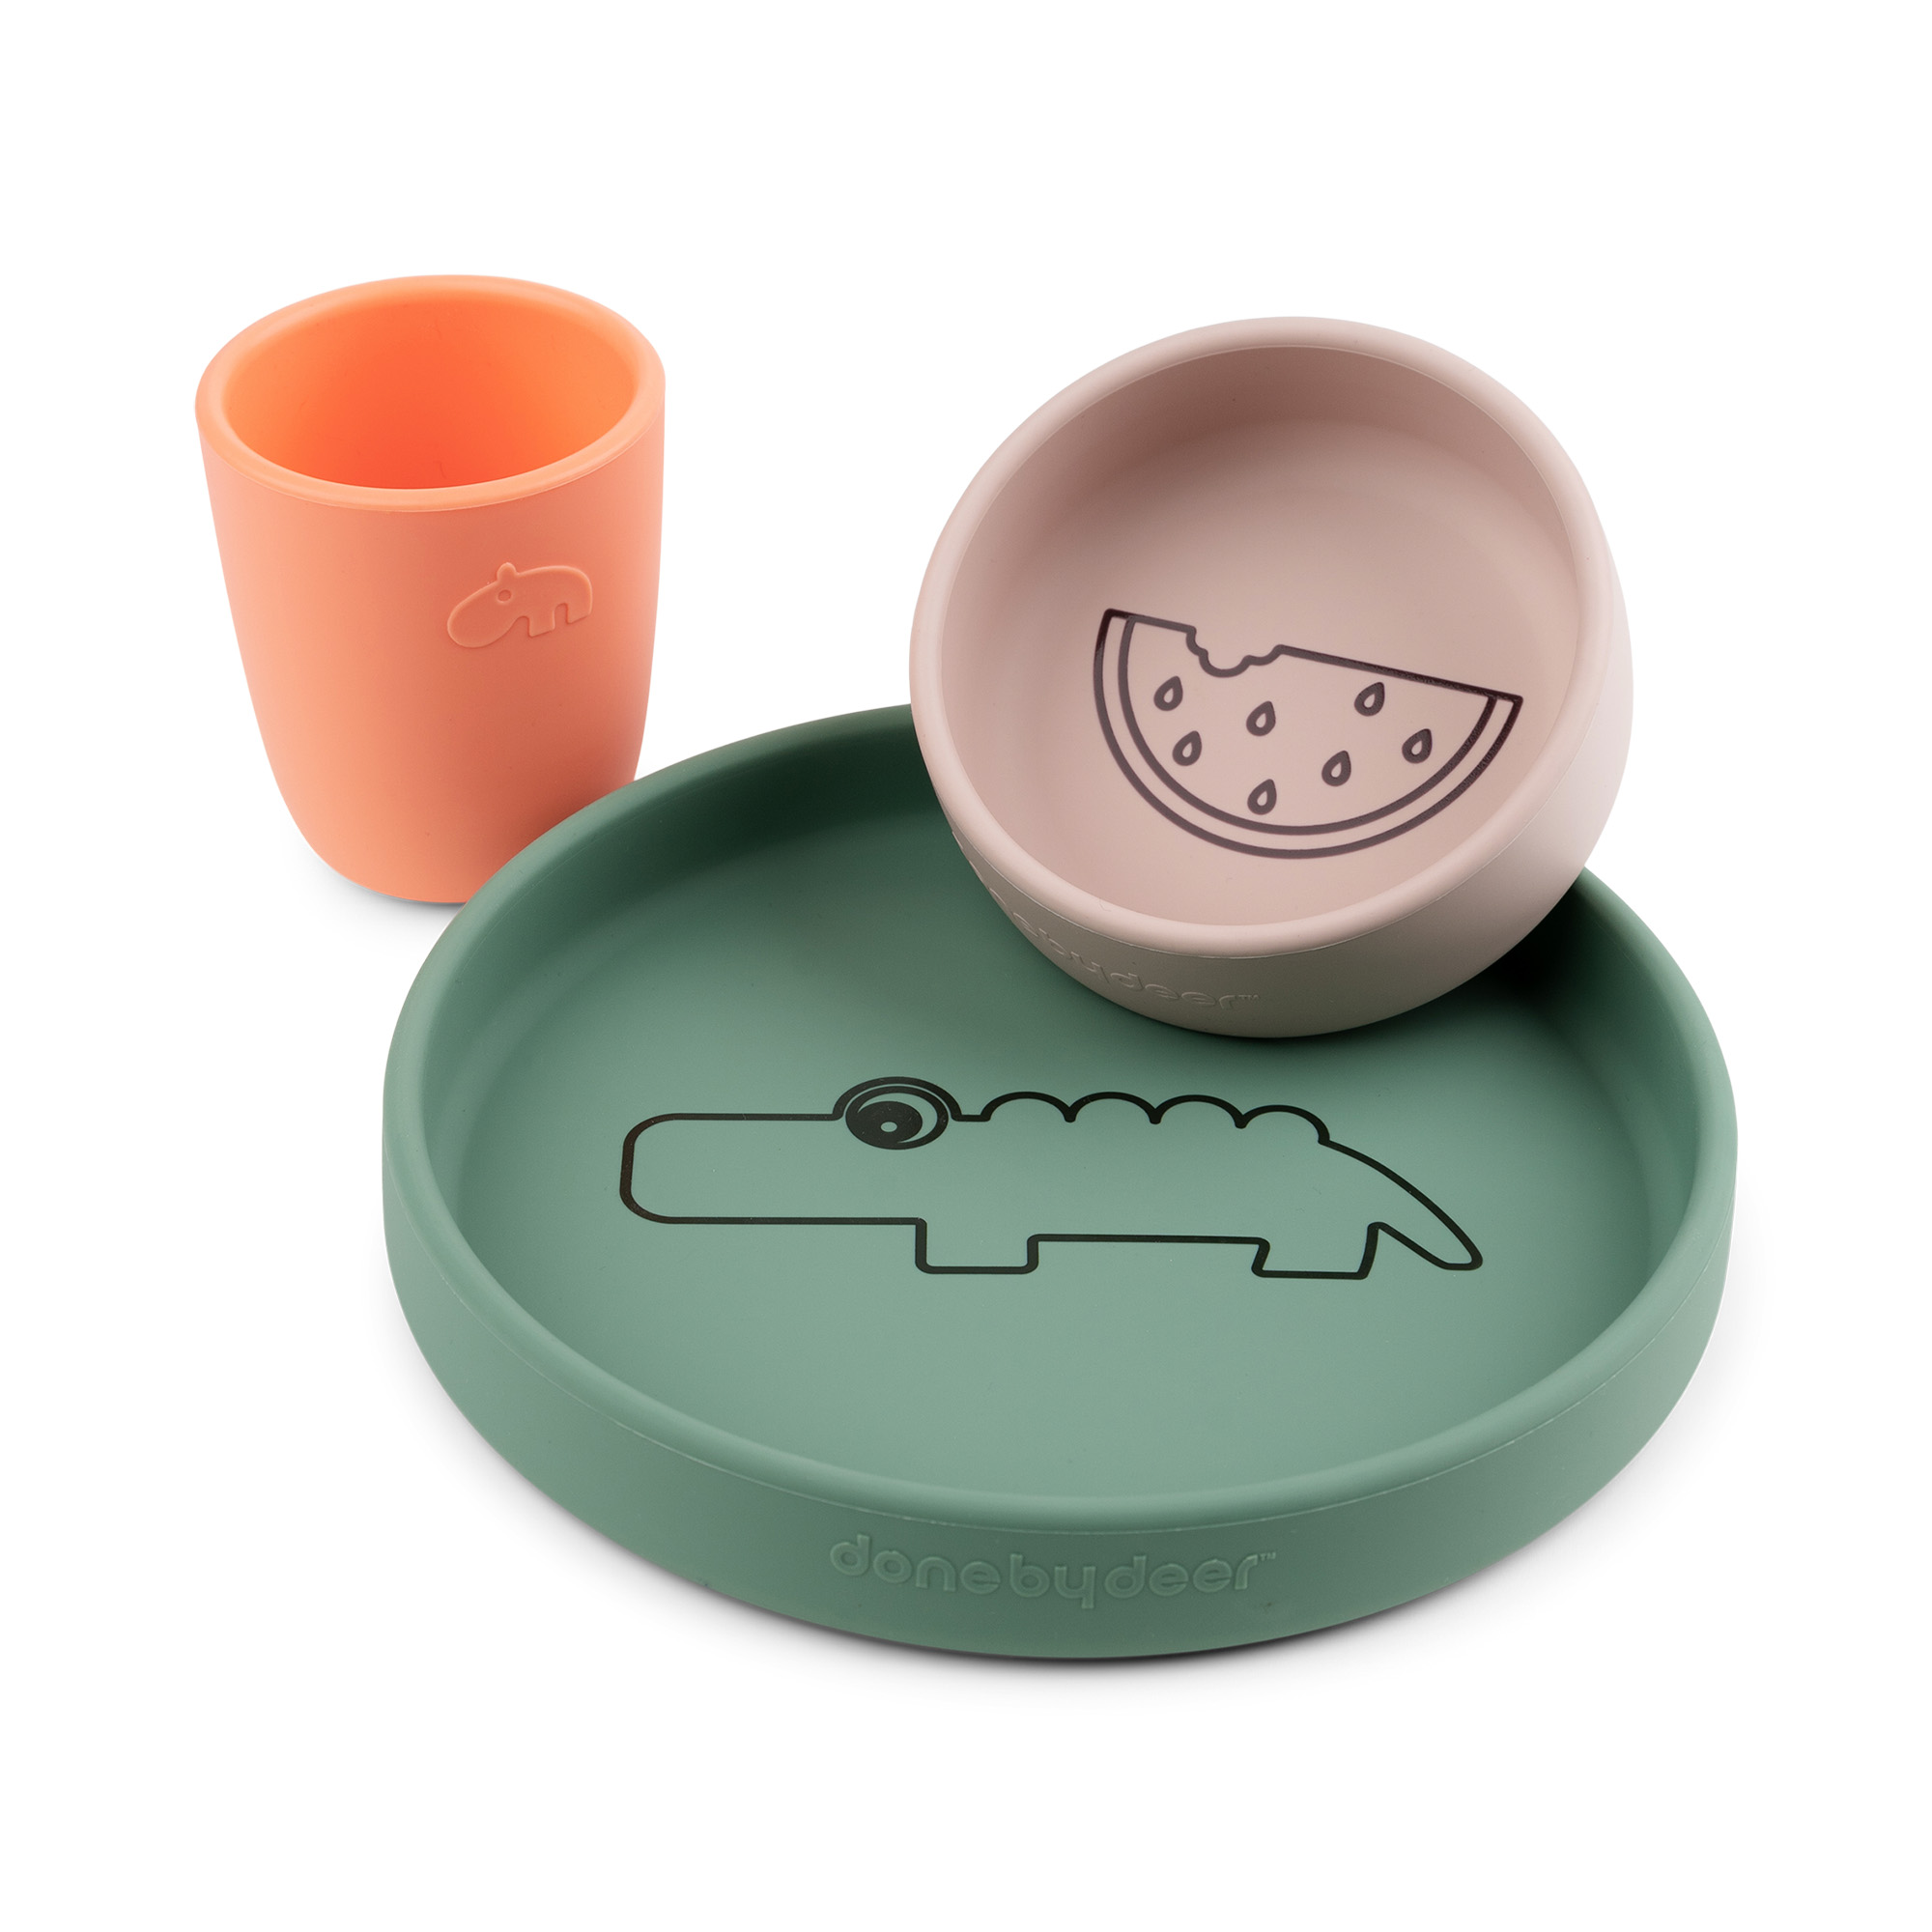 Tischkultur - Set - grün/orange/rosa - Silikon - Done by deer